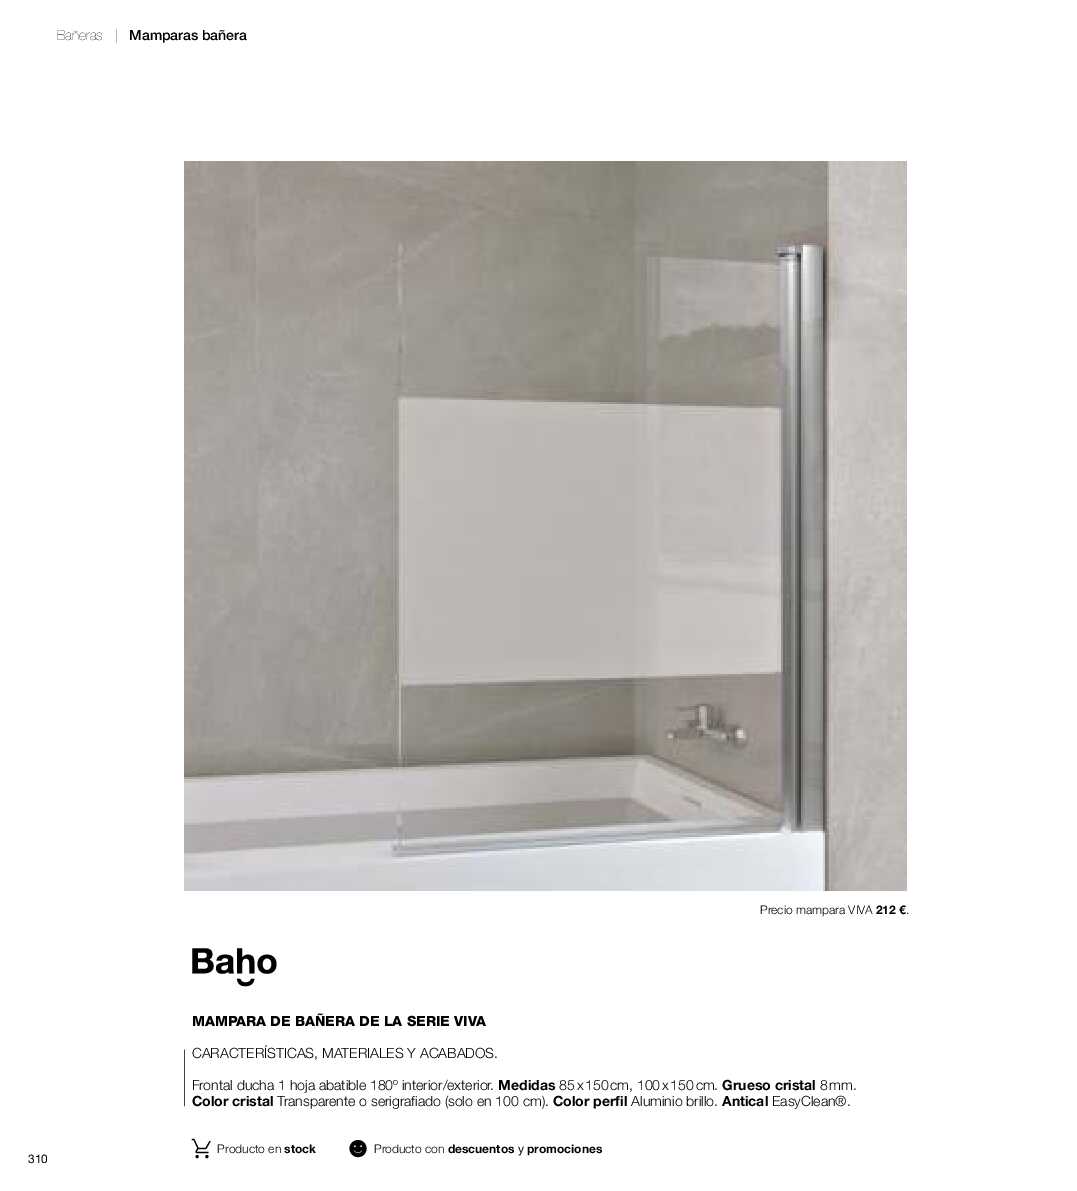 Catálogo de baños Gamma. Página 309